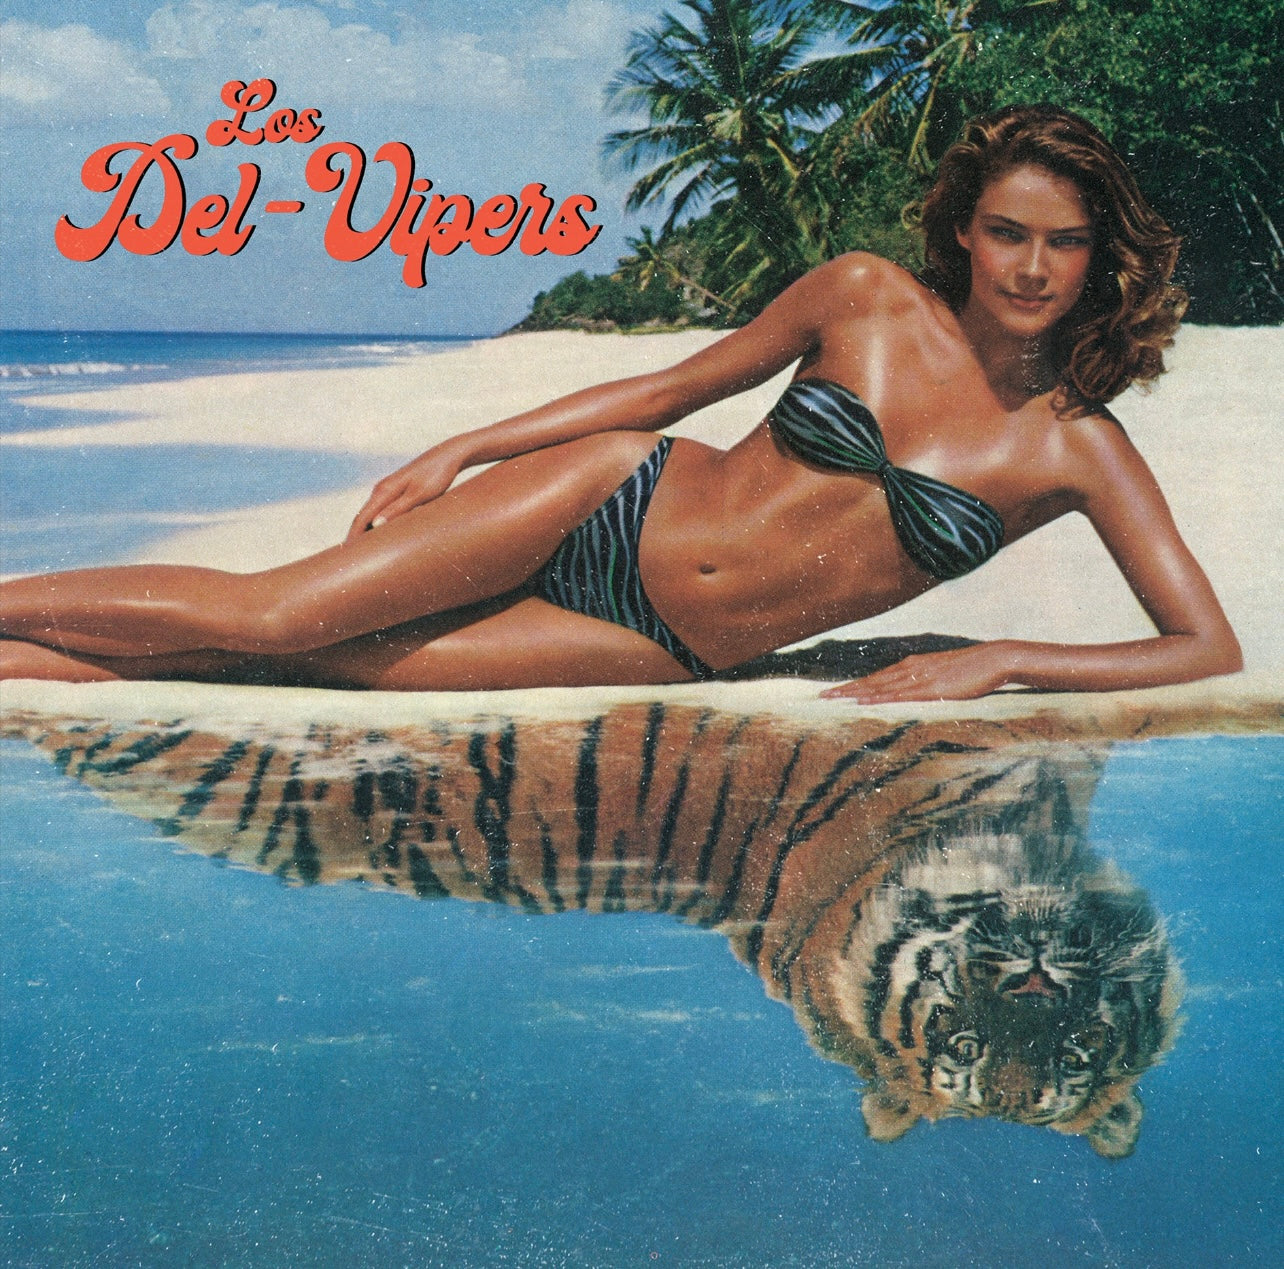 OMR-061 The Del Vipers “Los Del Vipers” LP (180 GM Vinyl)